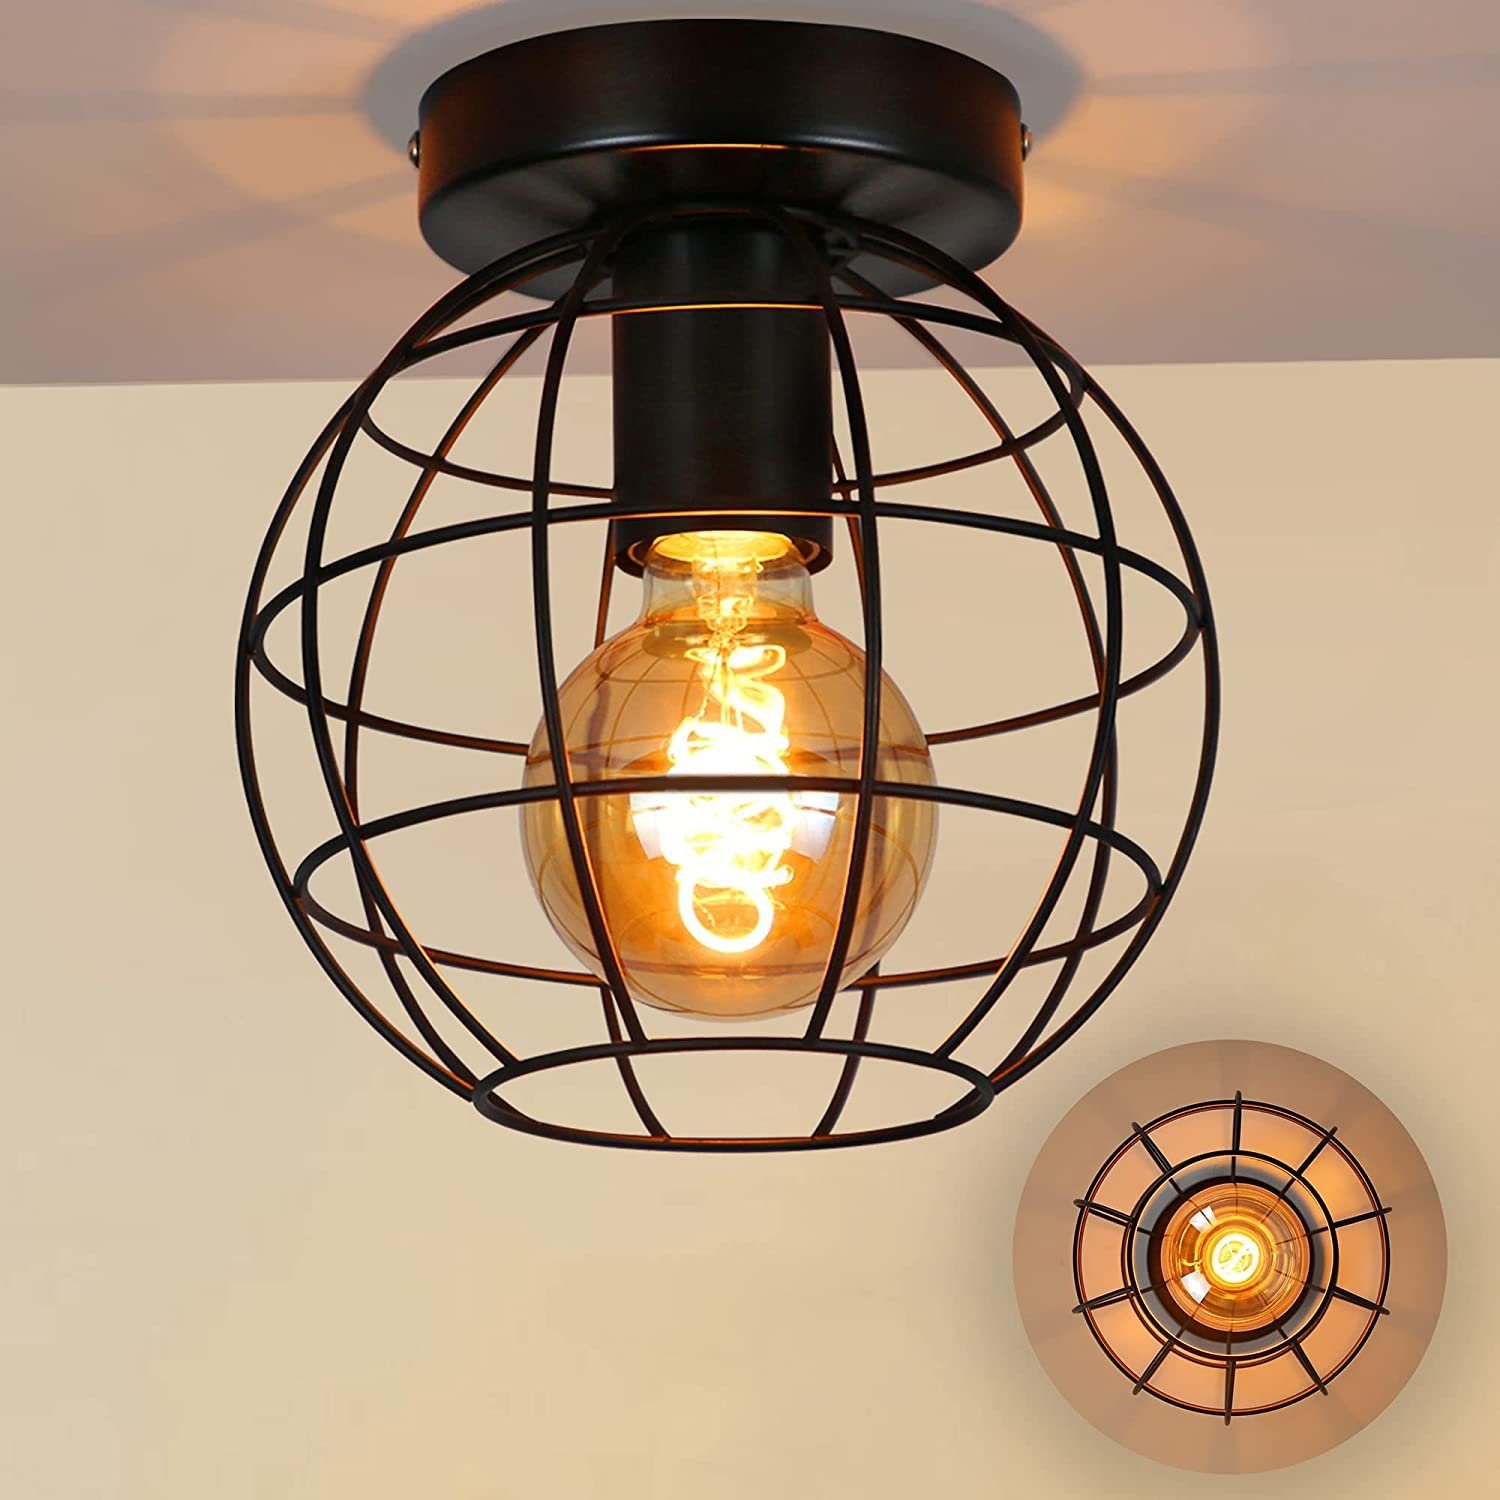 Deckenlampe LED 18W Lampe Leuchte verchromt Arbeitszimmer Spot Strahler Retro 